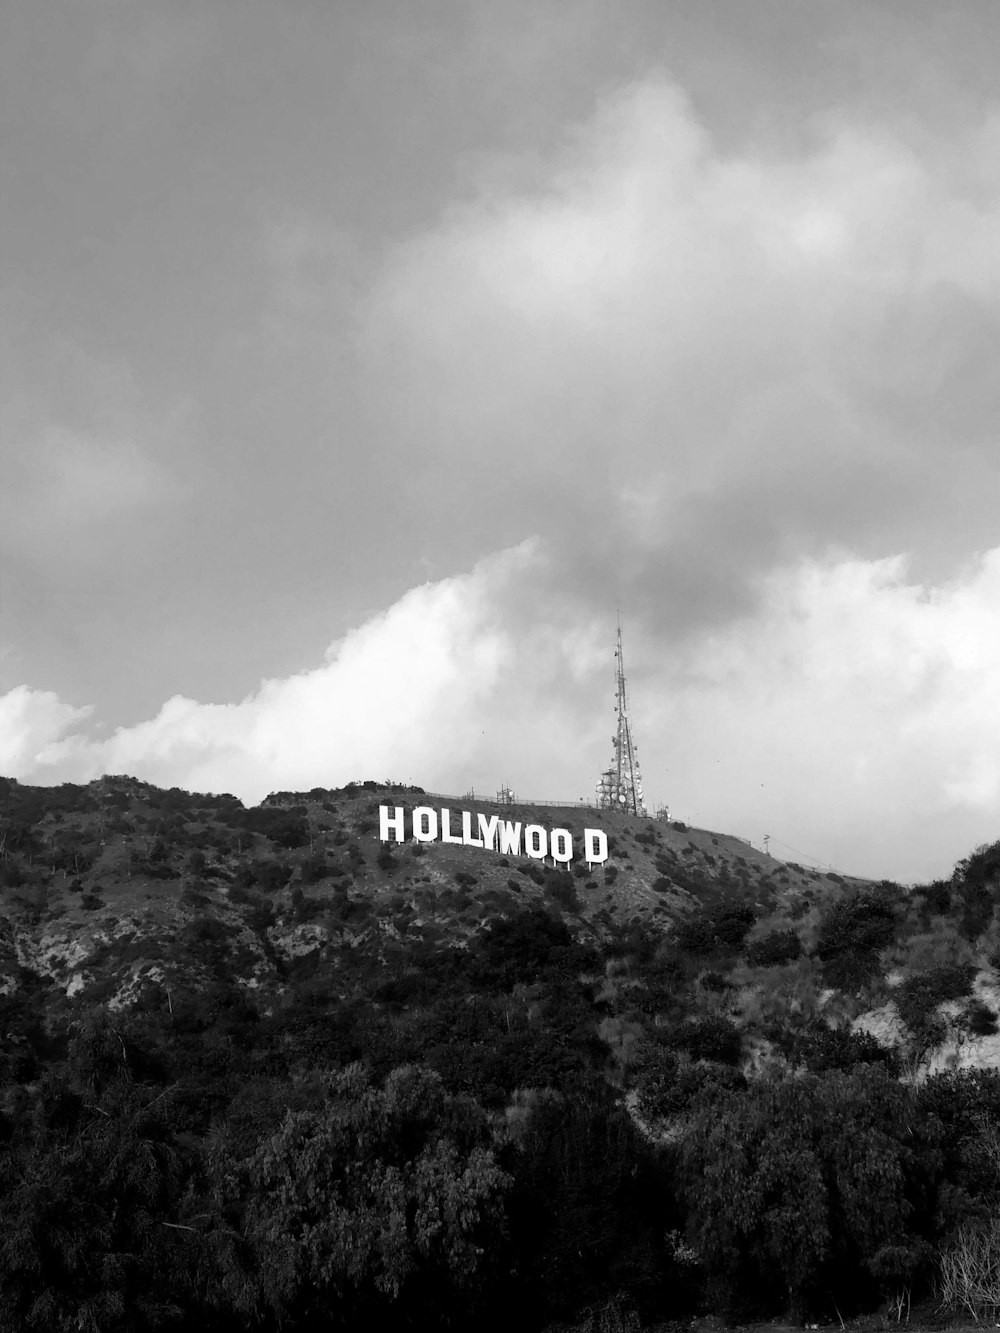 Ein Hollywood-Schild auf einem Berg unter einem bewölkten Himmel